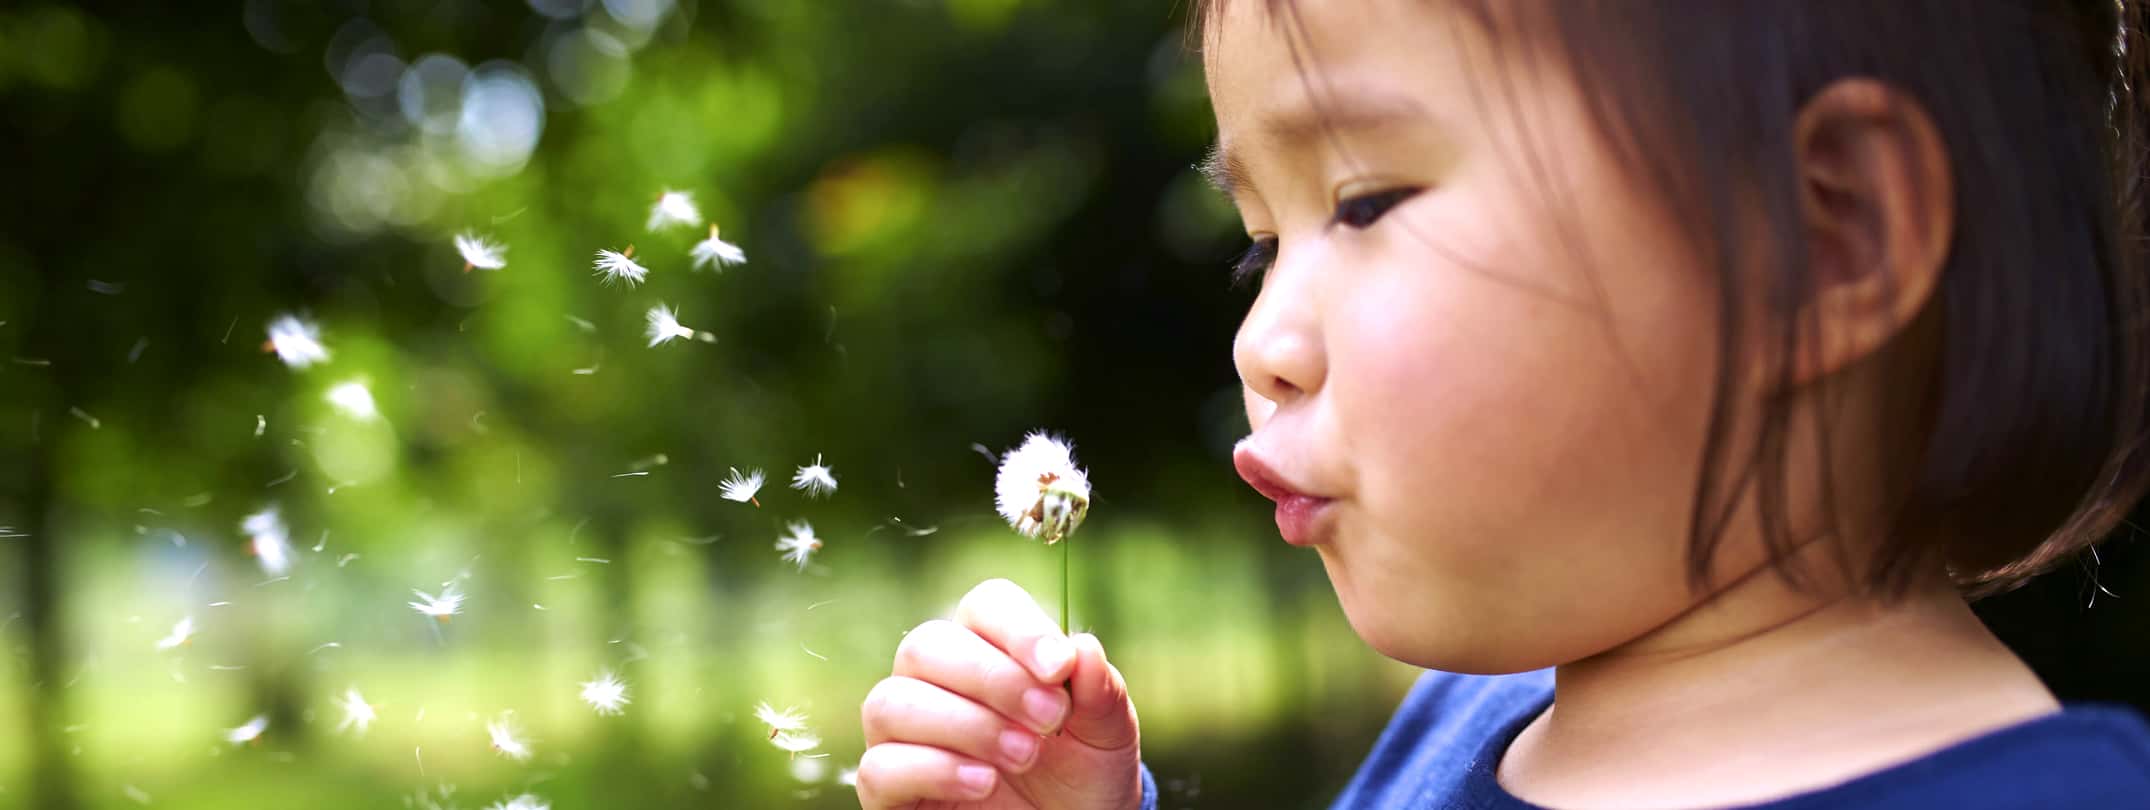 girl blowing dandelion flower